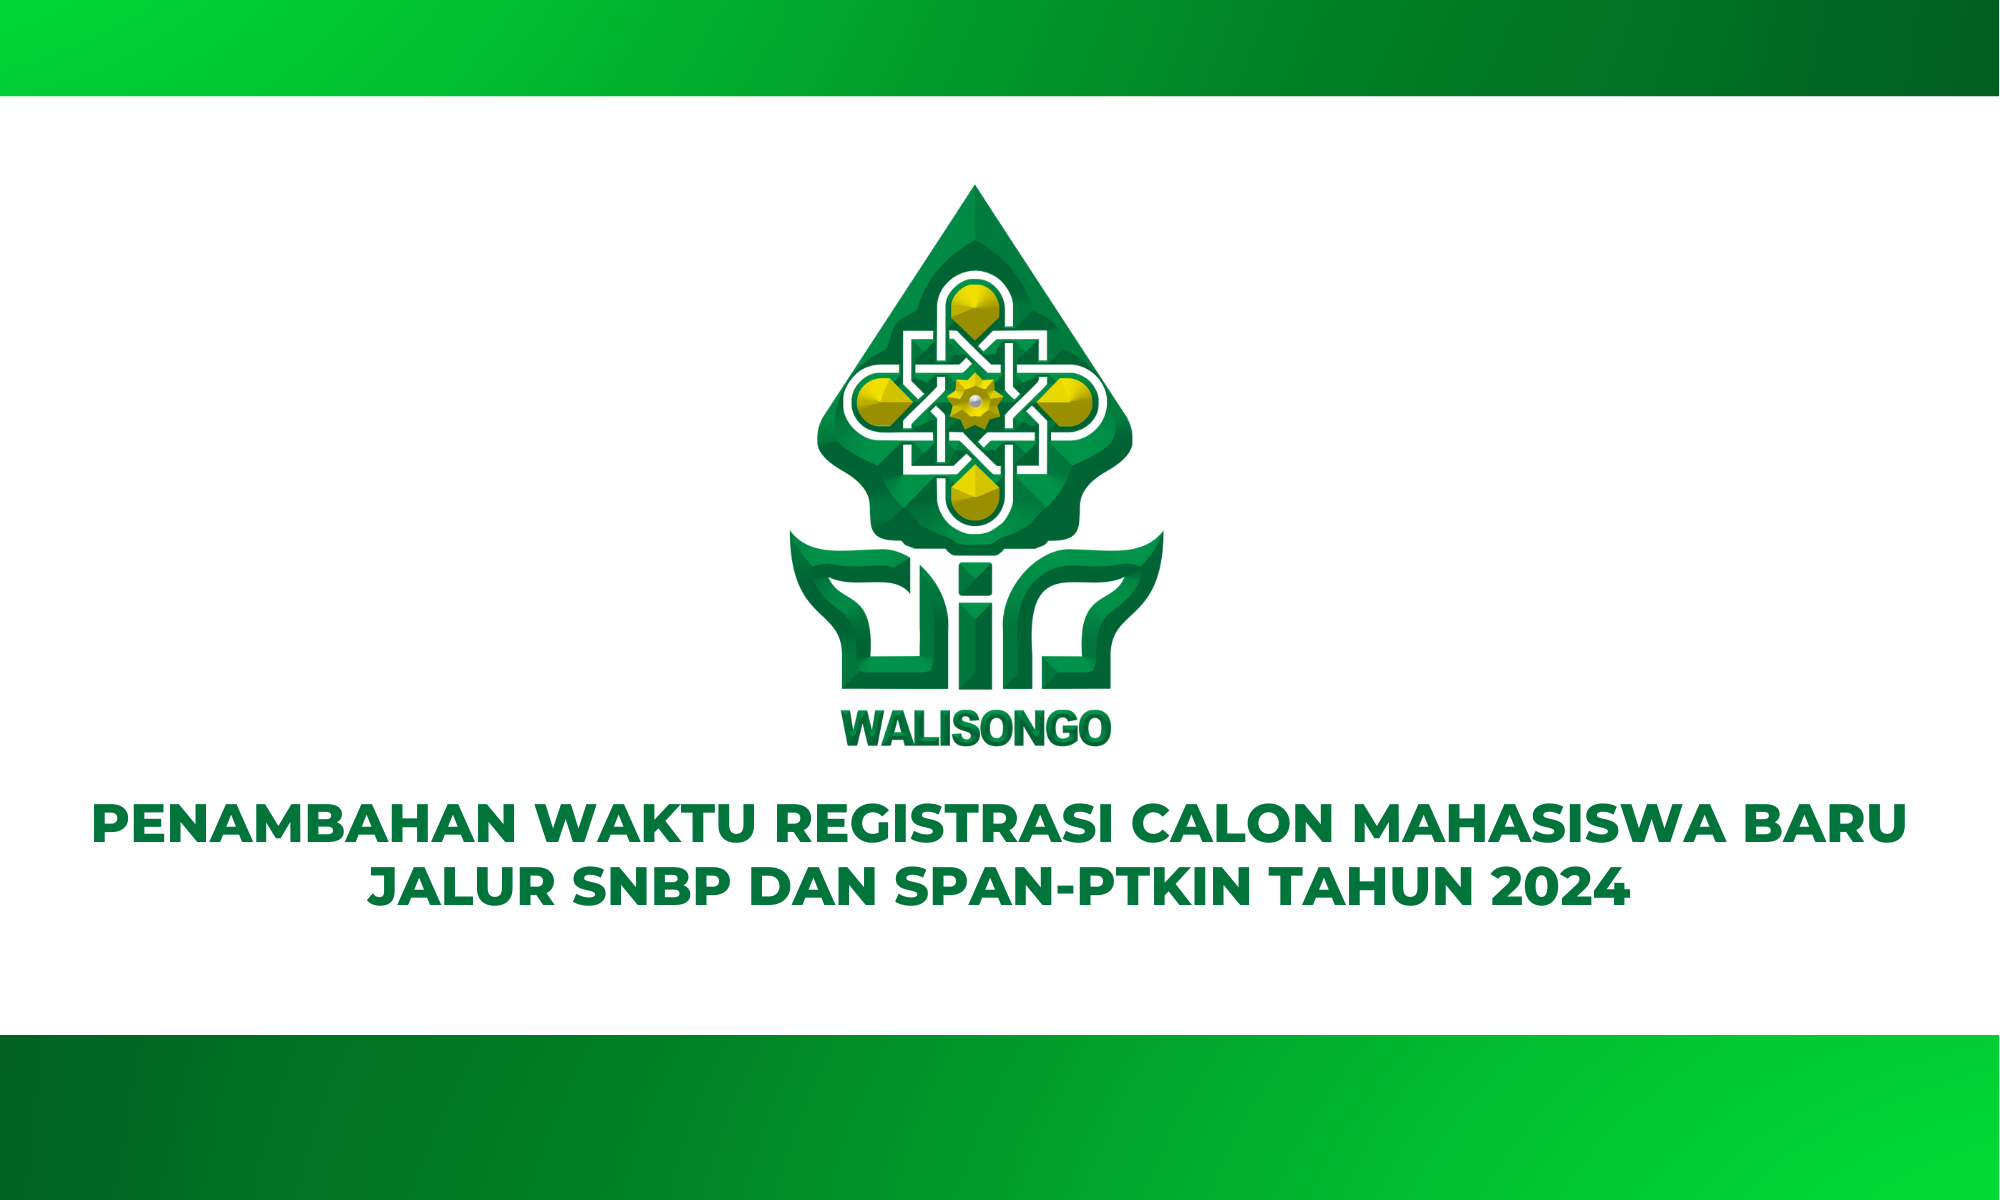 PENGUMUMAN PENAMBAHAN WAKTU REGISTRASI CALON MAHASISWA BARU JALUR SNBP DAN SPAN-PTKIN TAHUN 2024